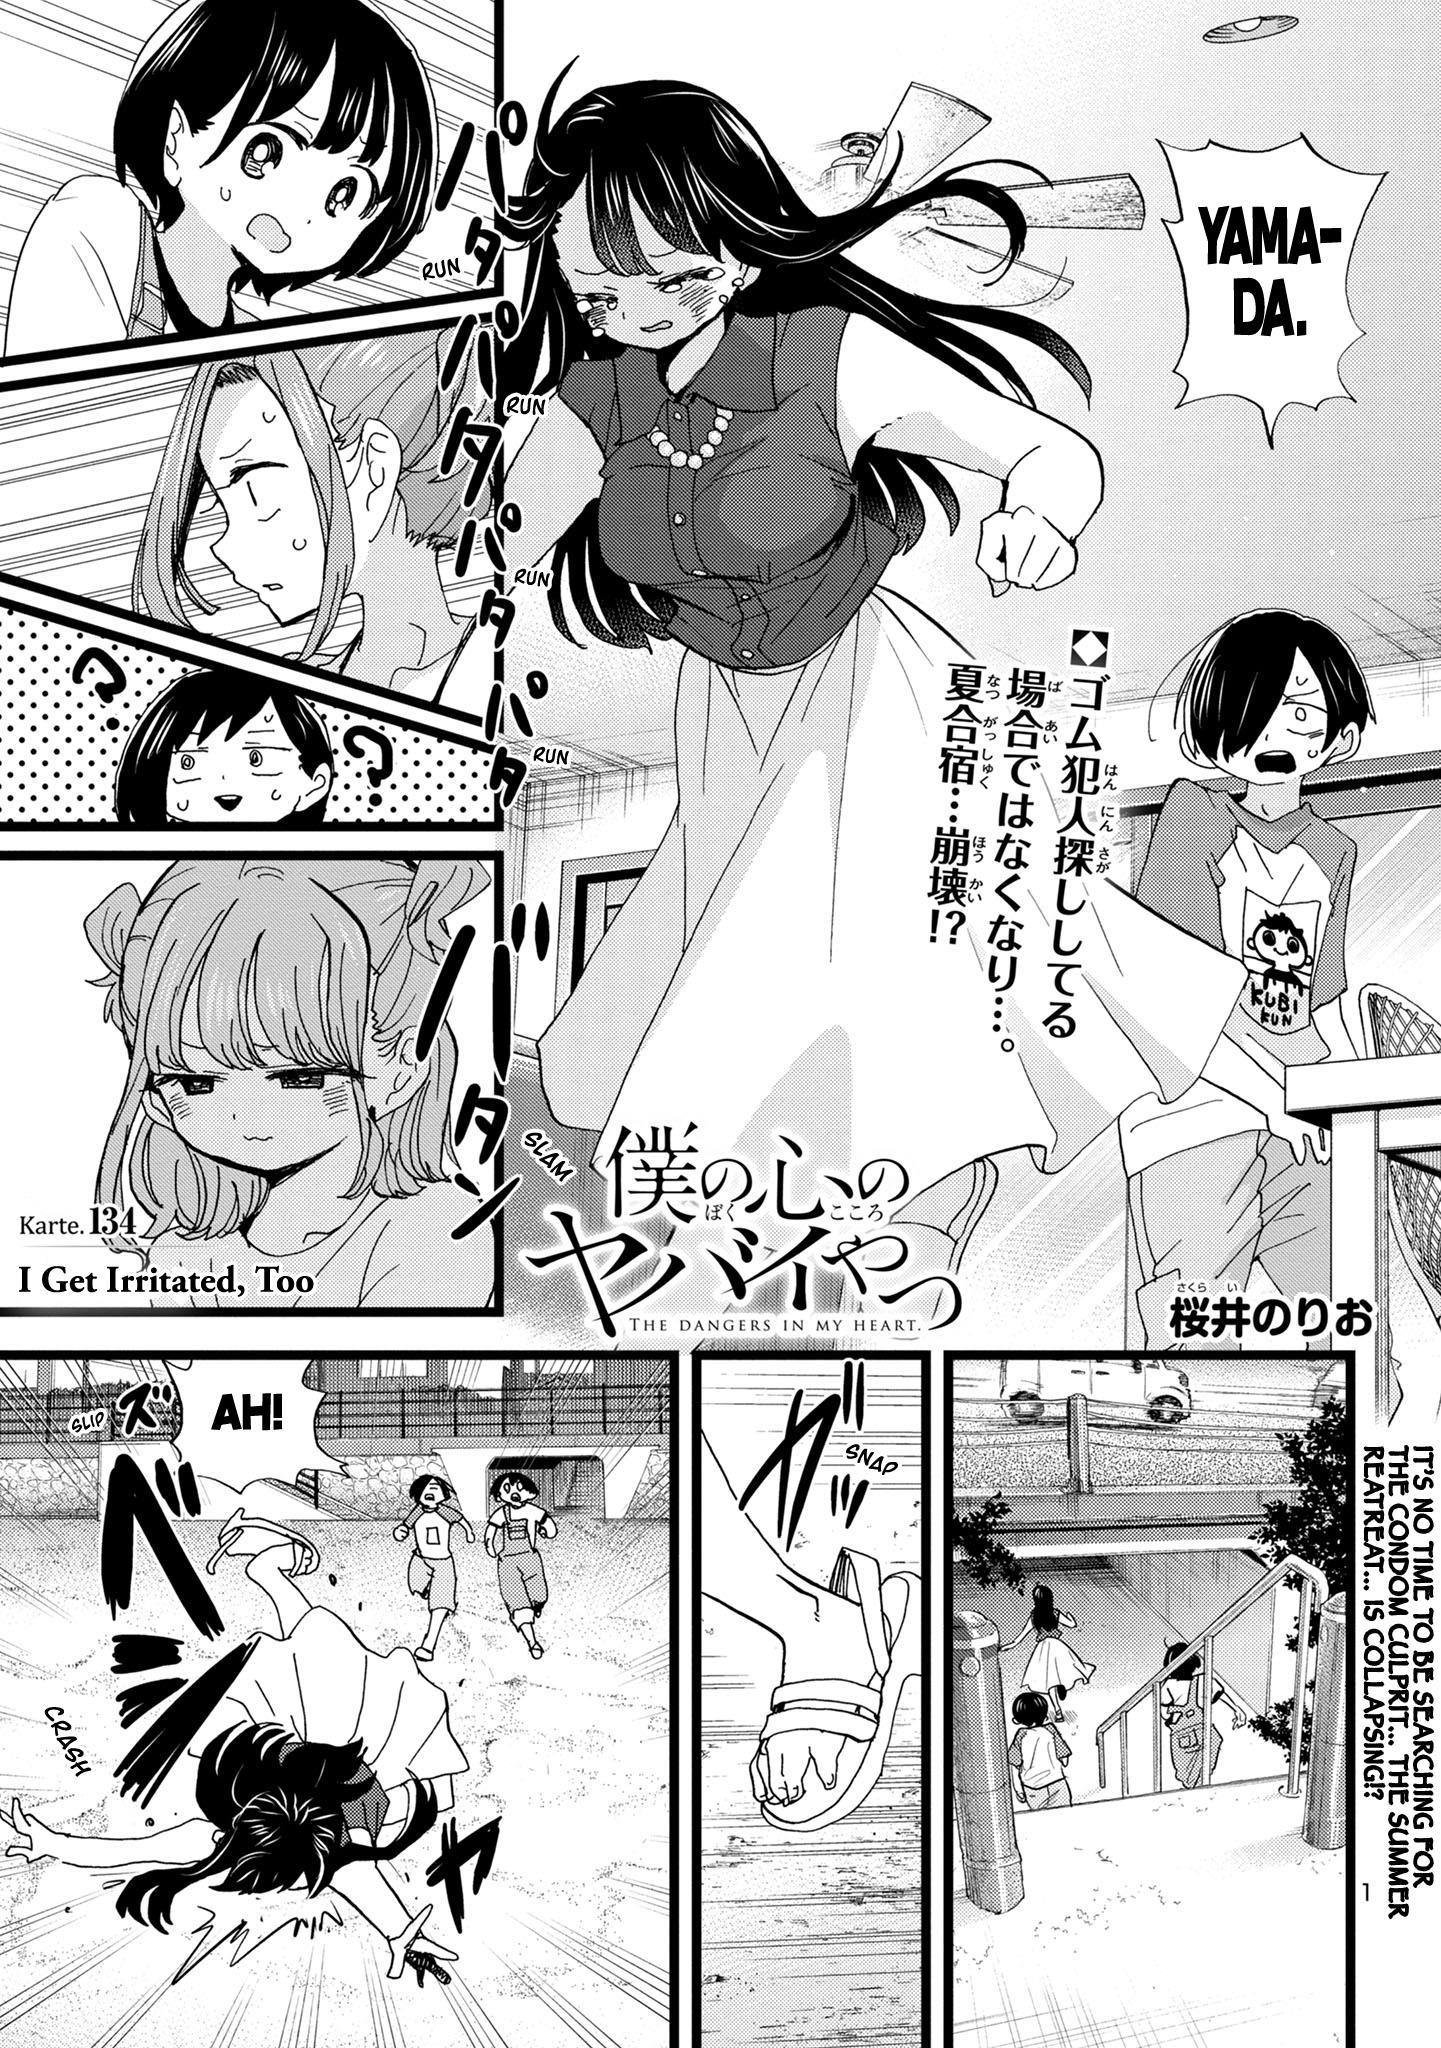 Boku no Kokoro no Yabai Yatsu Ch.96.1 Page 1 - Mangago